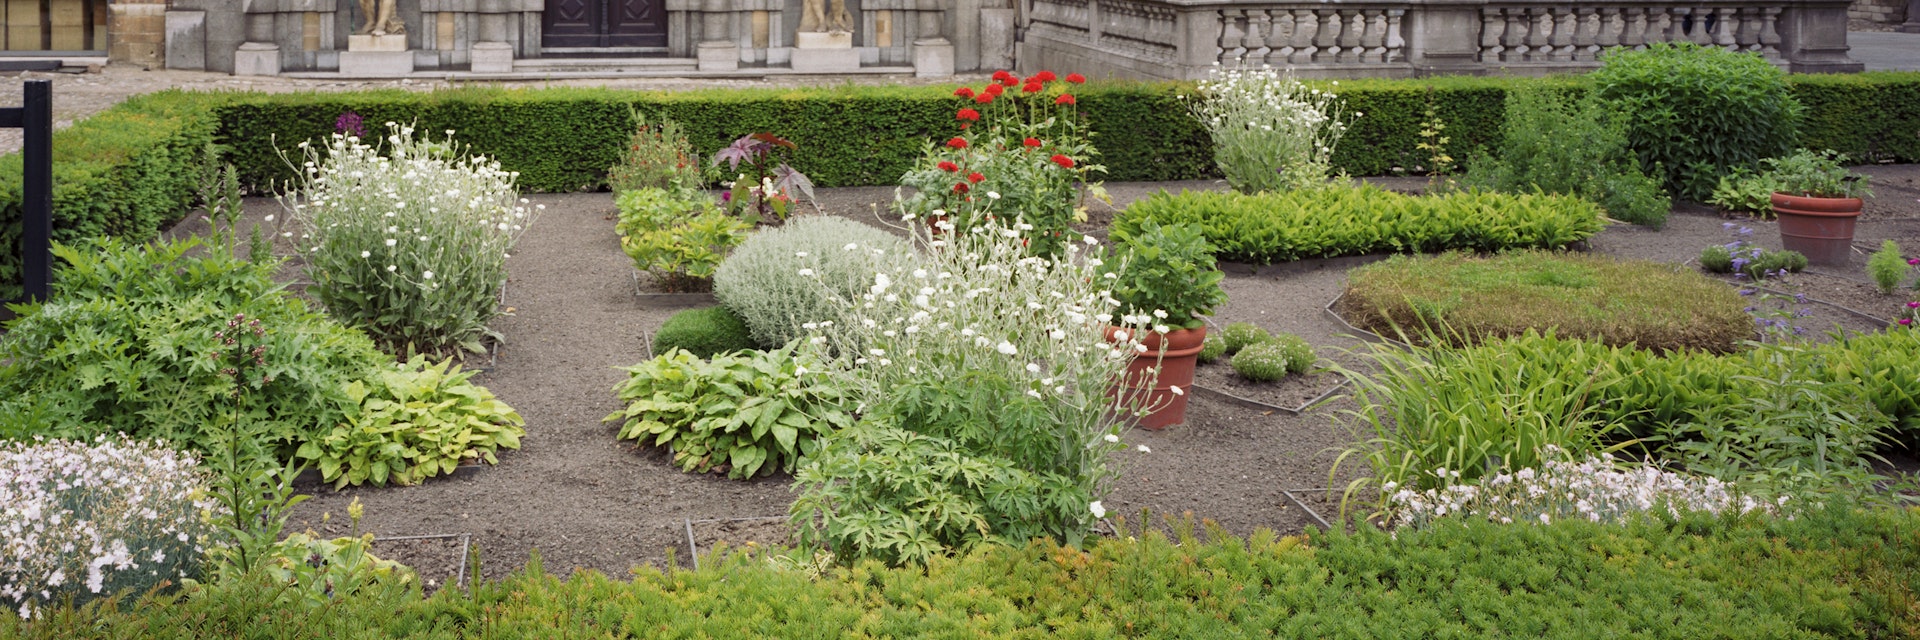 Belgium, Antwerp, garden in Peter Paul Ruben's house